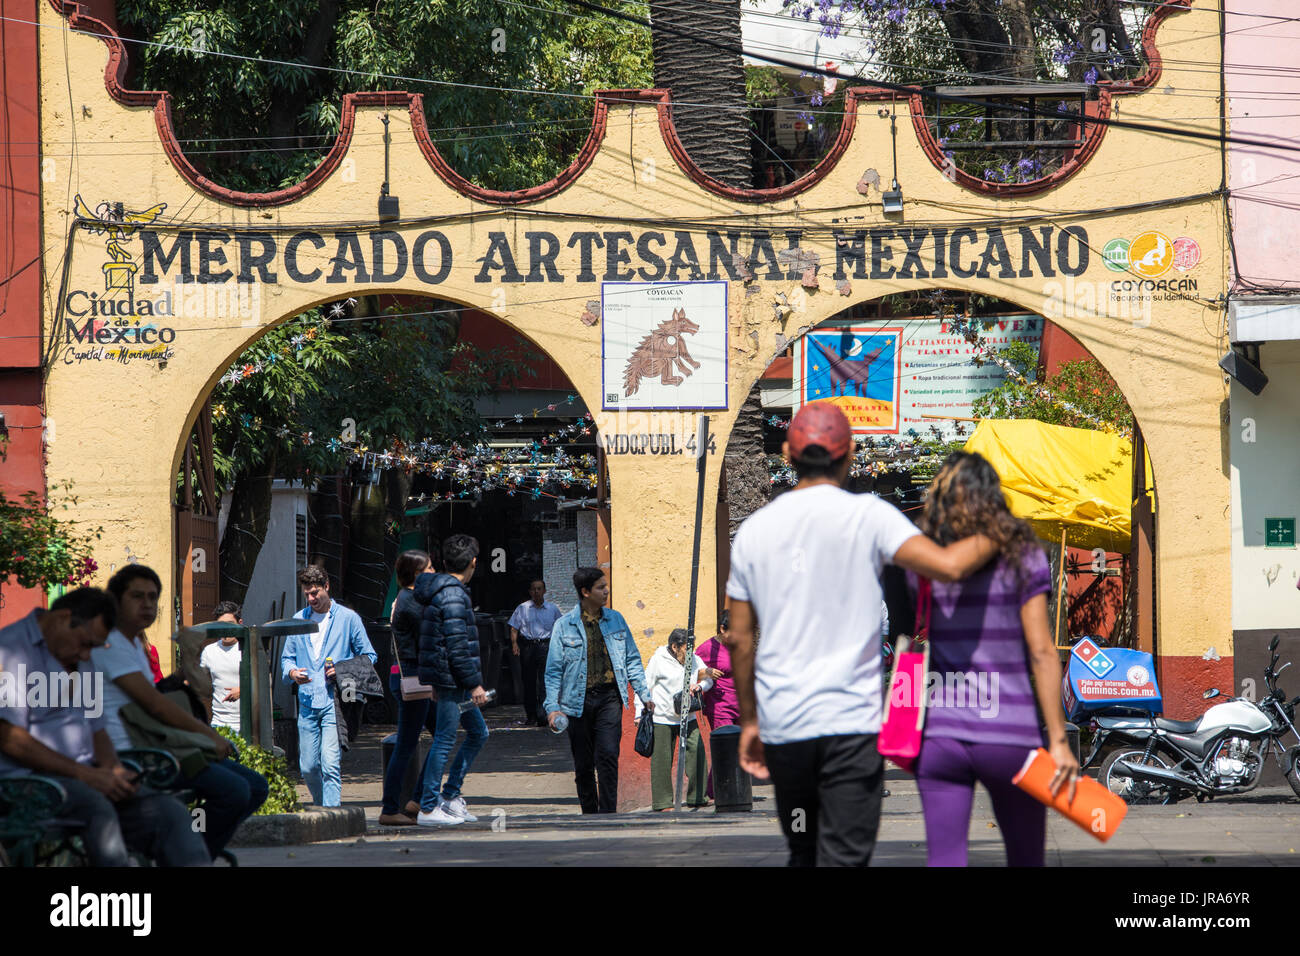 Mercado fatto tutto artigianelmente Mexicano, Città del Messico, Messico Foto Stock